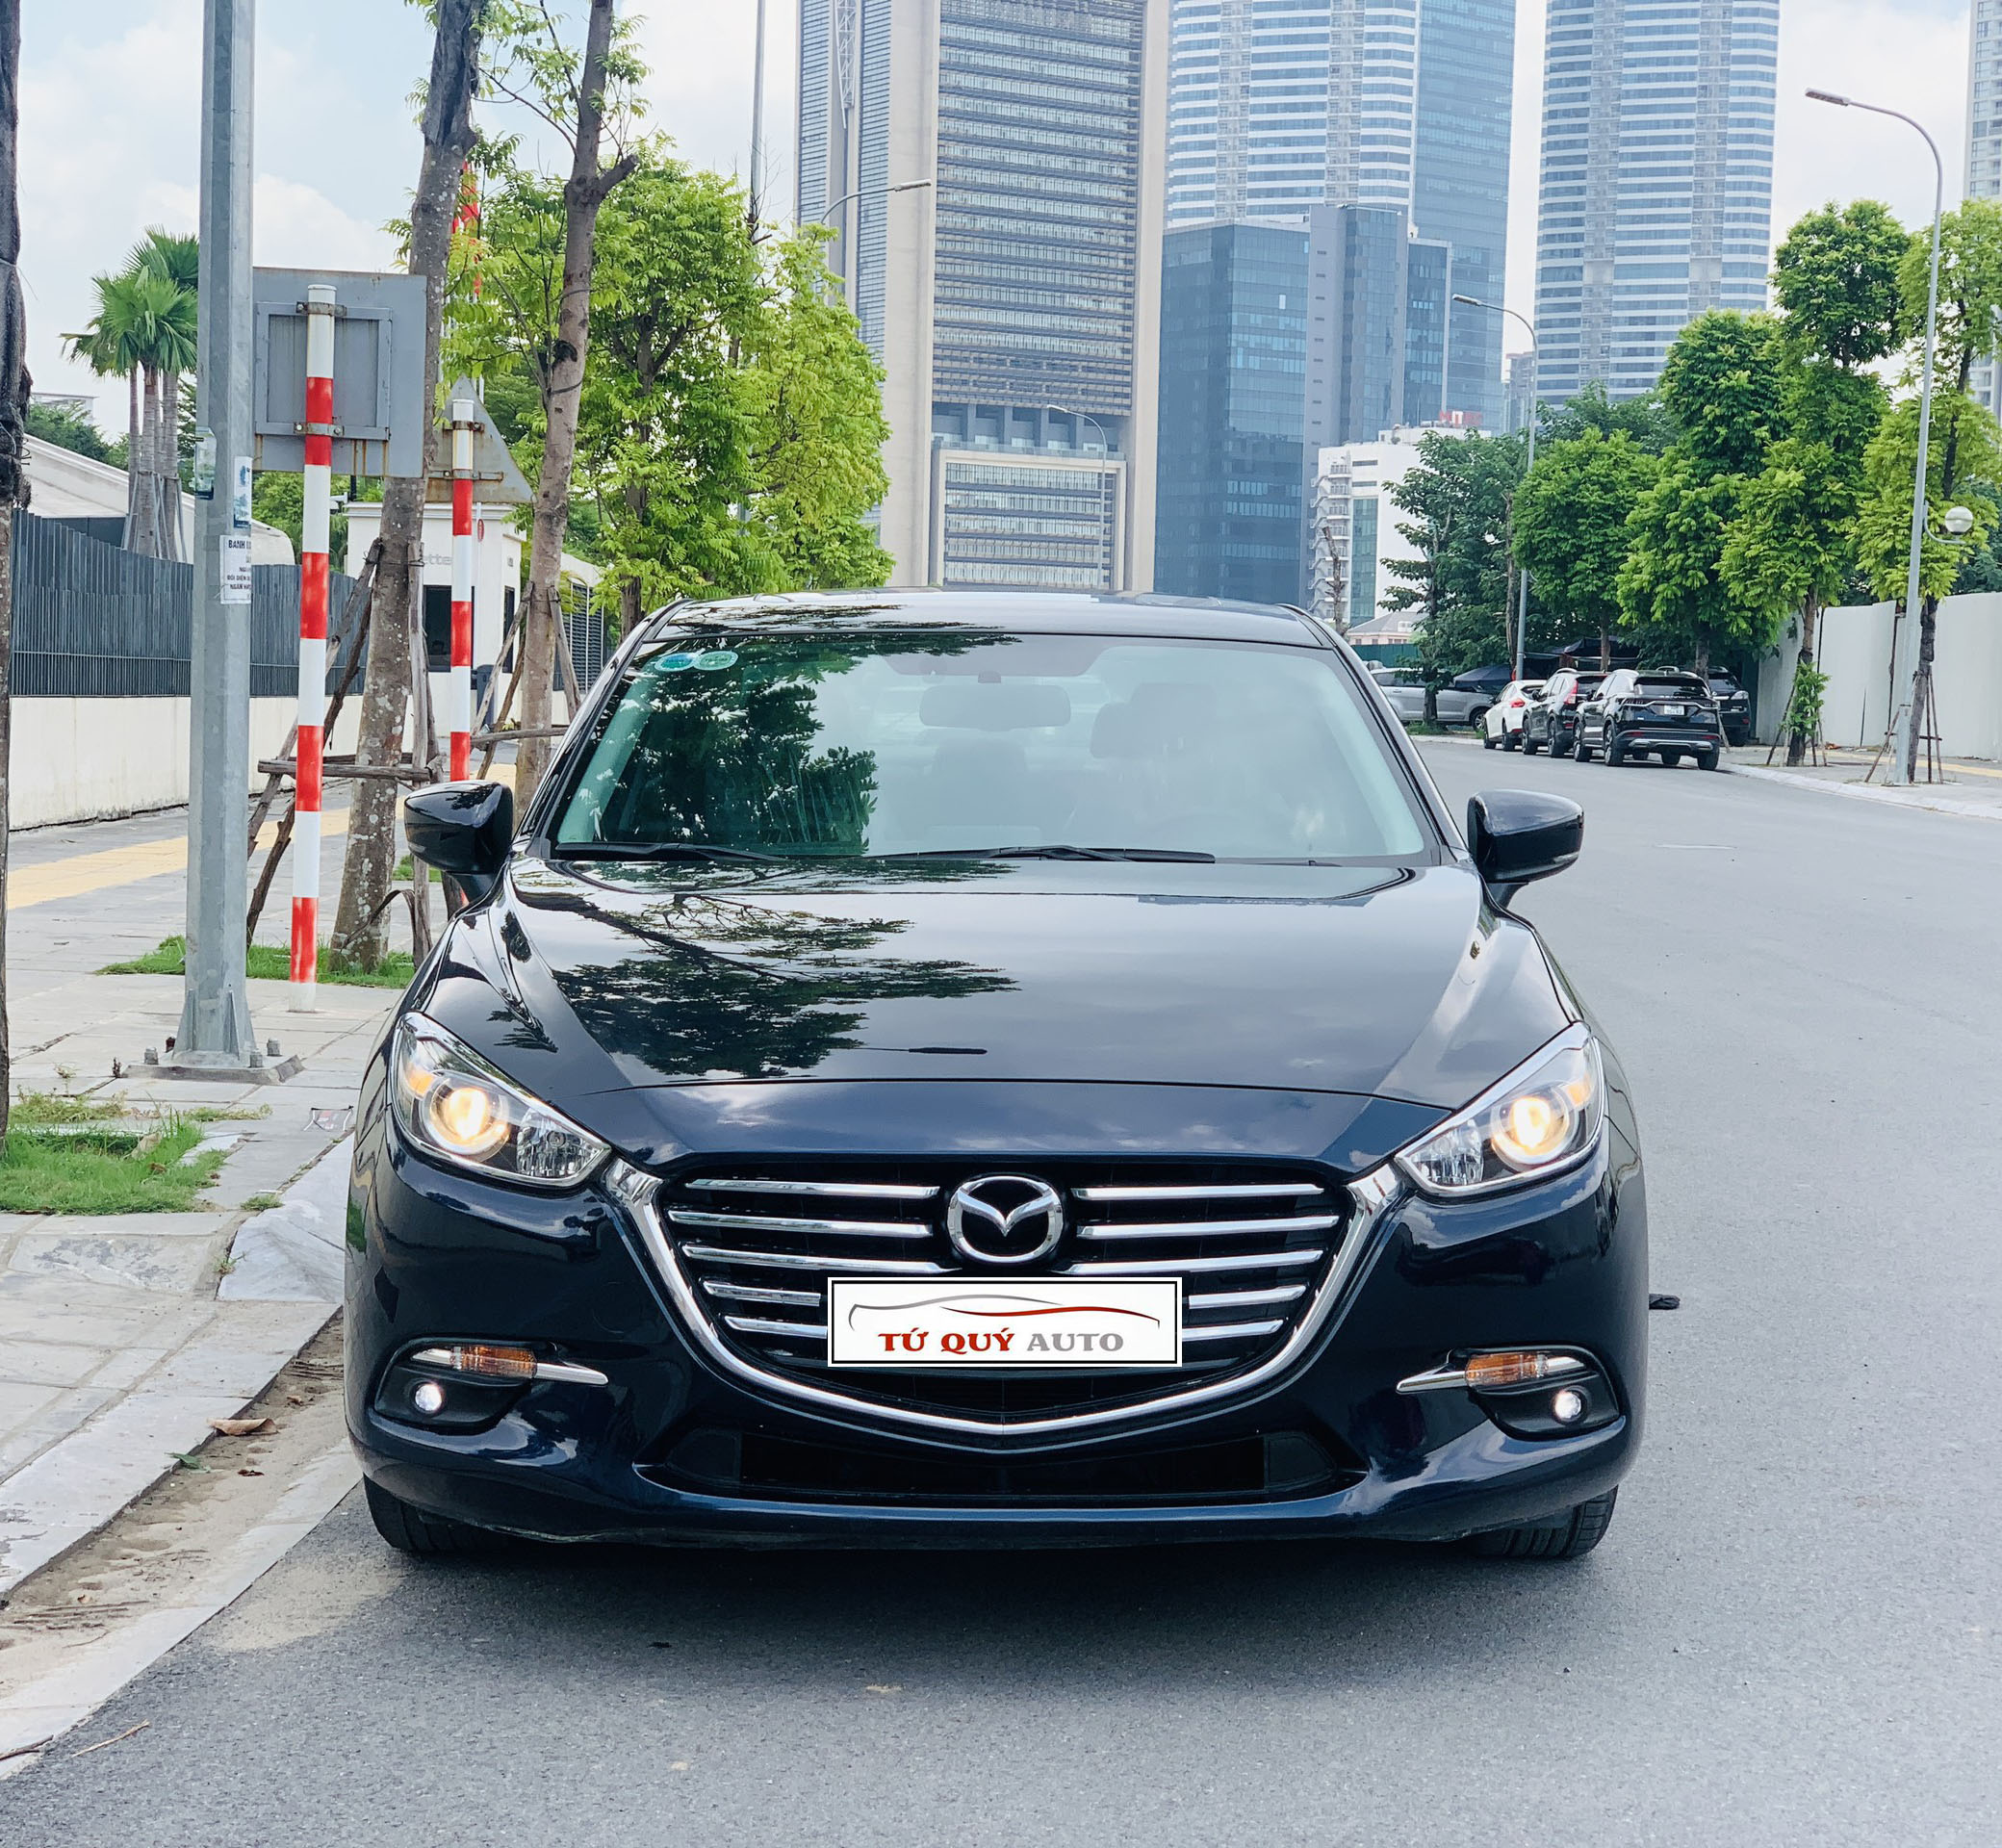 Mua Bán Xe Mazda 3 2017 Cũ Giá Rẻ Cập Nhật 042023